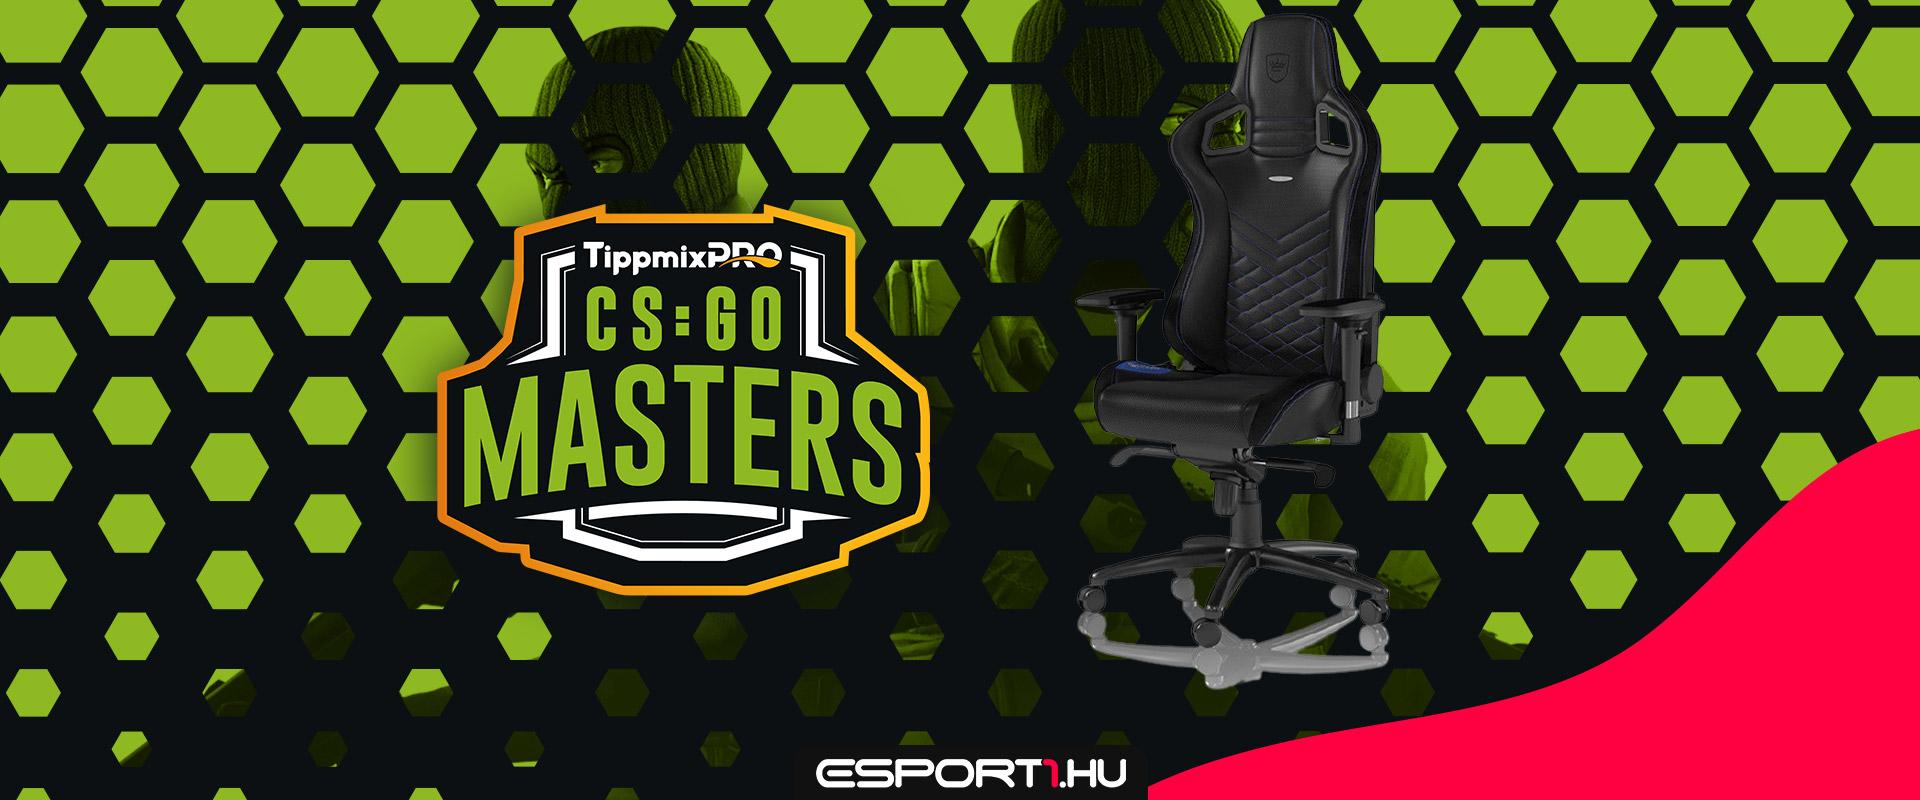 Nézd a TippmixPro CS:GO Masters közvetítéseit és nyerj Noblechairs gamer széket!